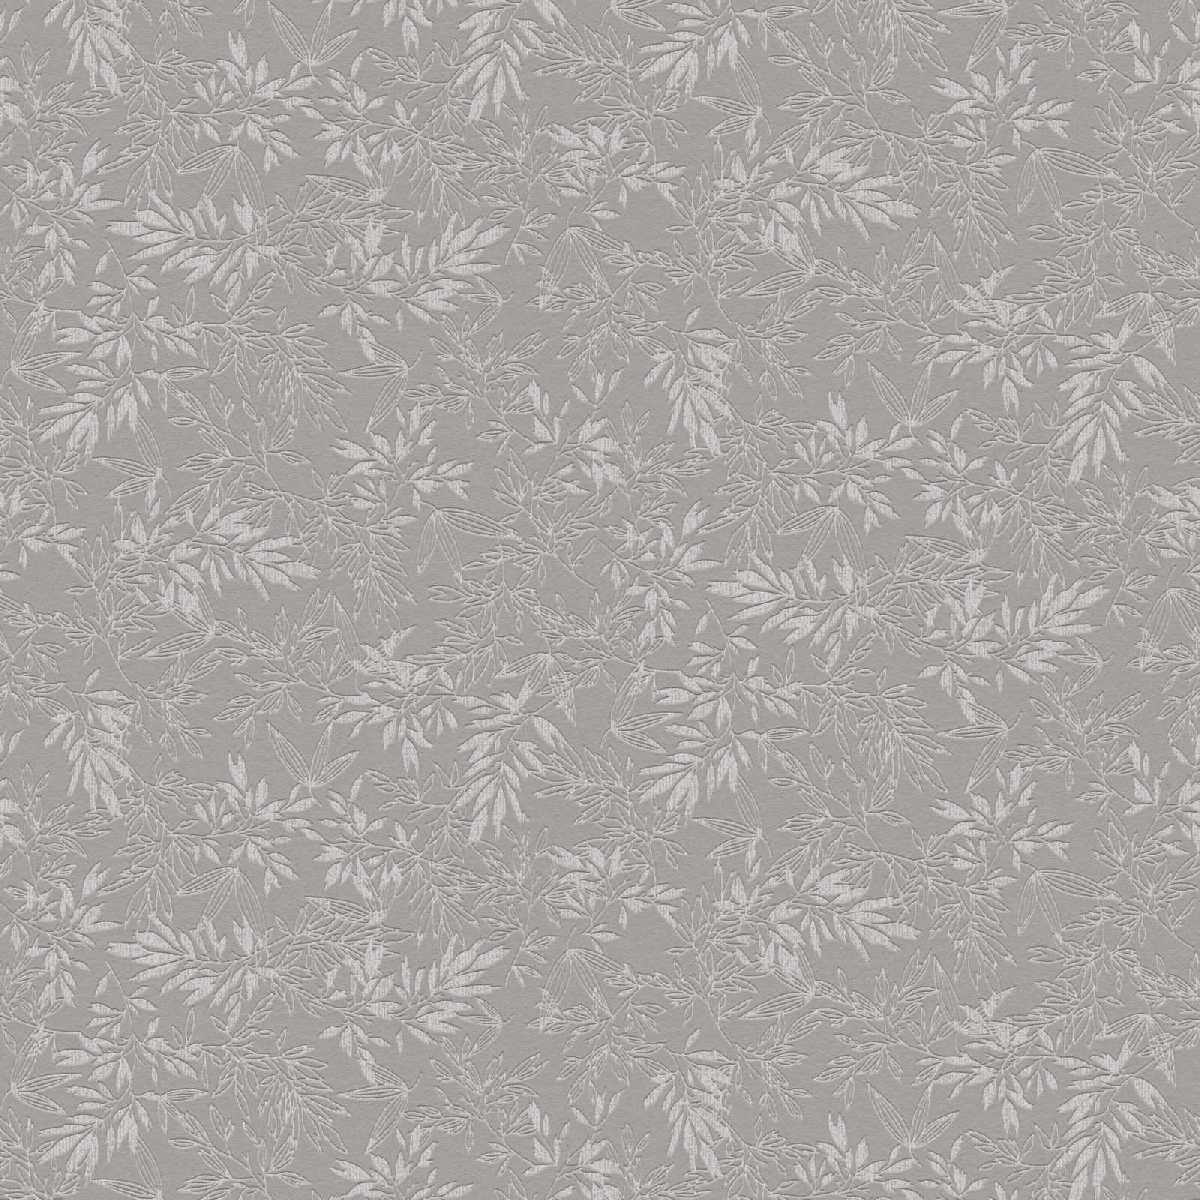 Vliestapete Attractive II 390283 - Floral Muster - Grau, Hellgrau